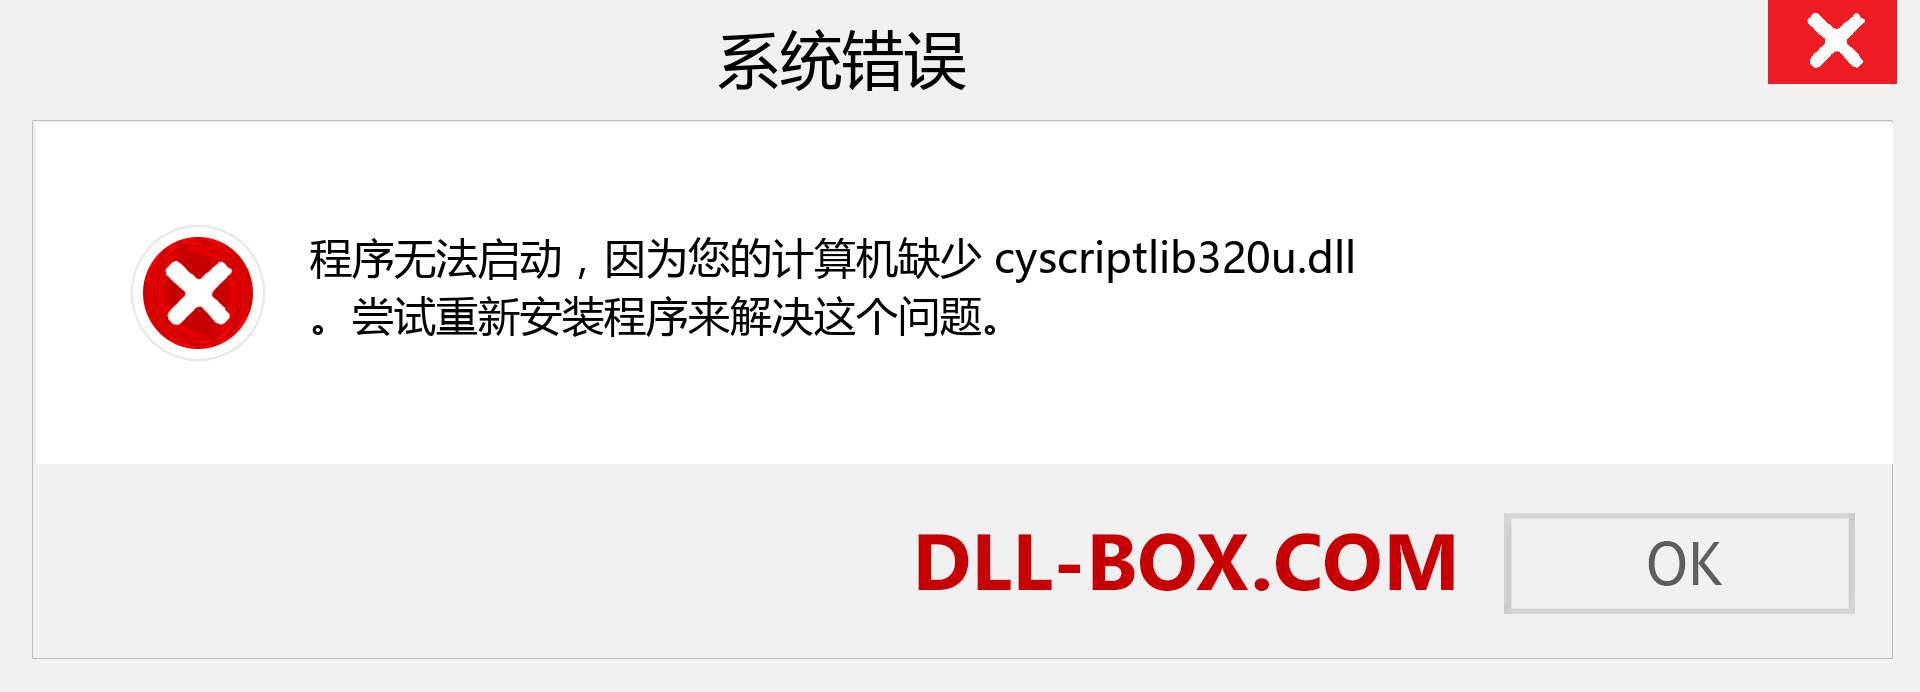 cyscriptlib320u.dll 文件丢失？。 适用于 Windows 7、8、10 的下载 - 修复 Windows、照片、图像上的 cyscriptlib320u dll 丢失错误